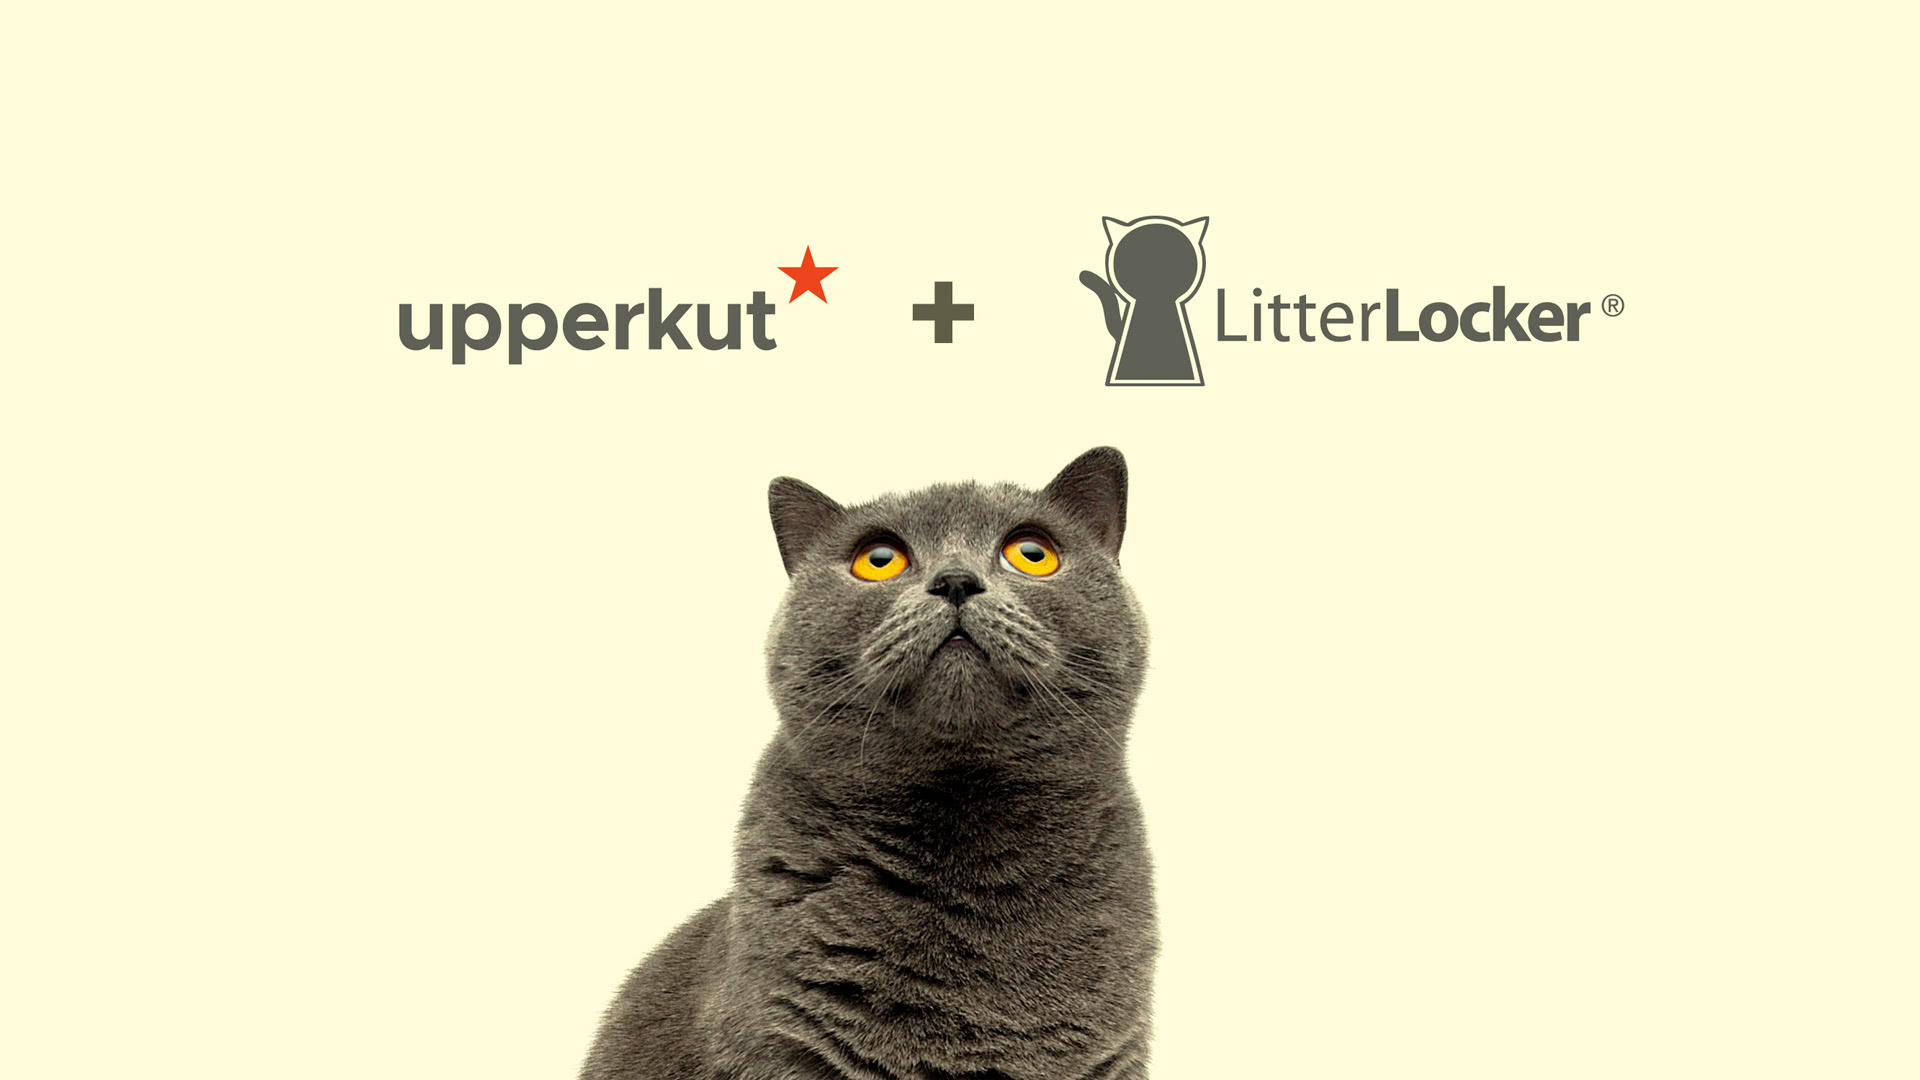 LitterLocker accorde un mandat stratégique à Upperkut